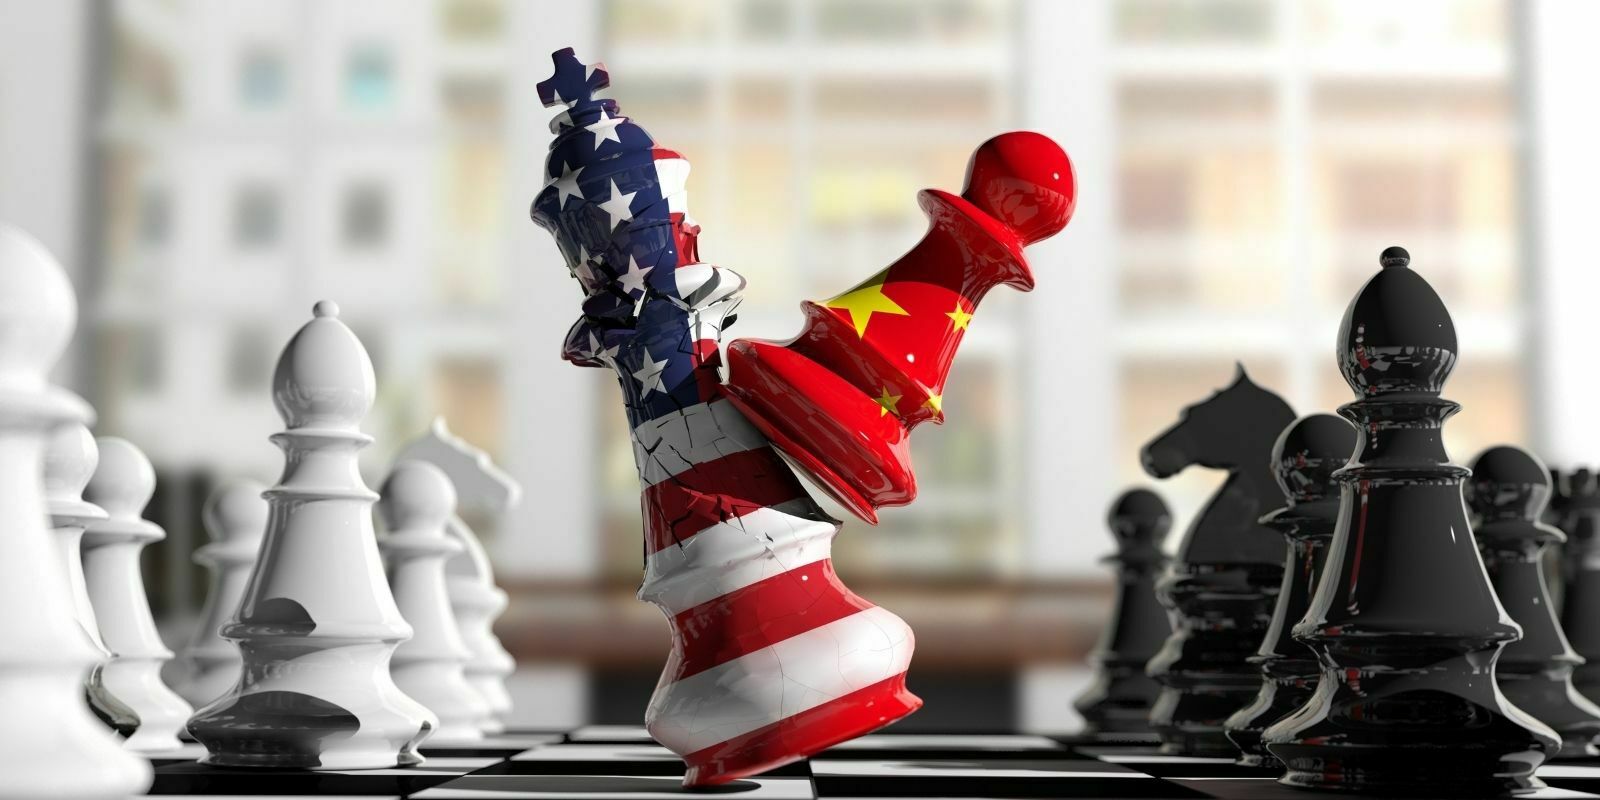 Le yuan numérique, une arme dans la guerre entre la Chine et les États-Unis ?